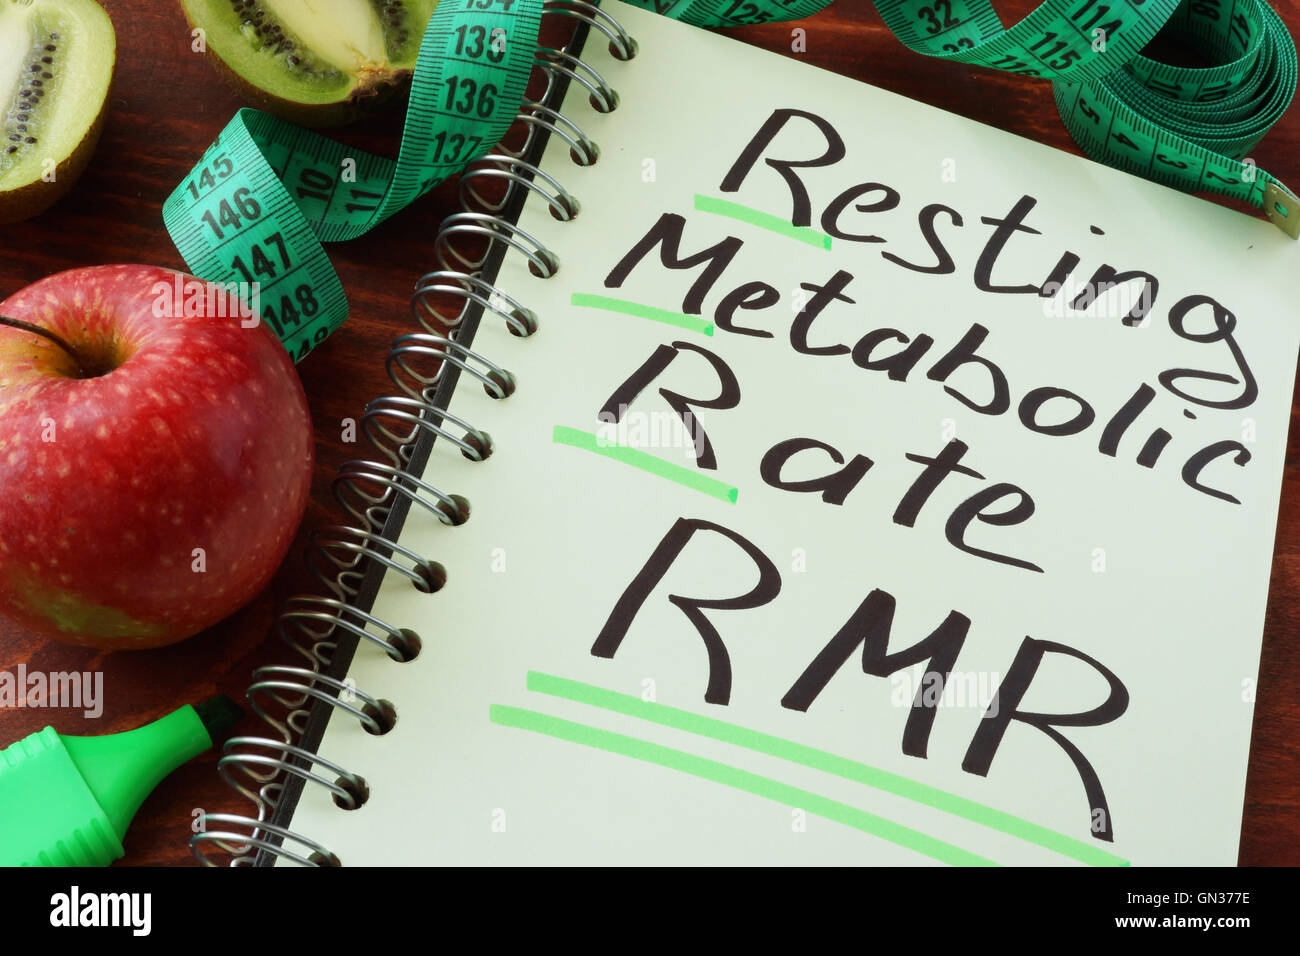 RMR appoggio tasso metabolico scritto su un foglio di blocco note. Foto Stock